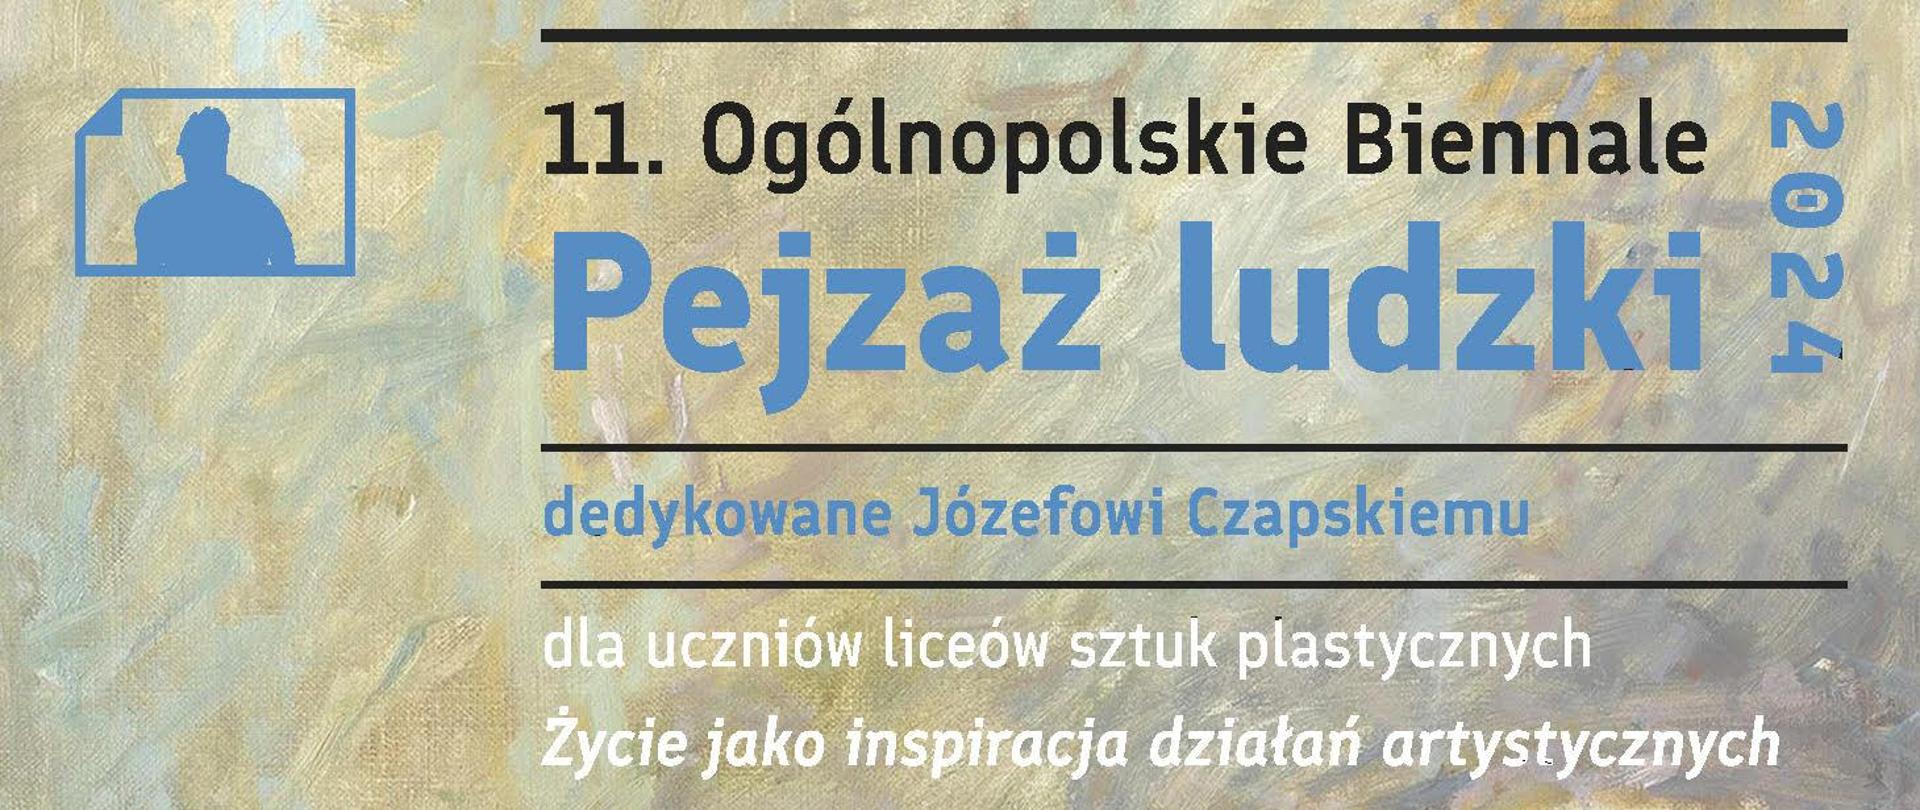 11. Ogólnopolskie Biennale Pejzaż ludzki 2024 dedykowane Józefowi Czapskiemu